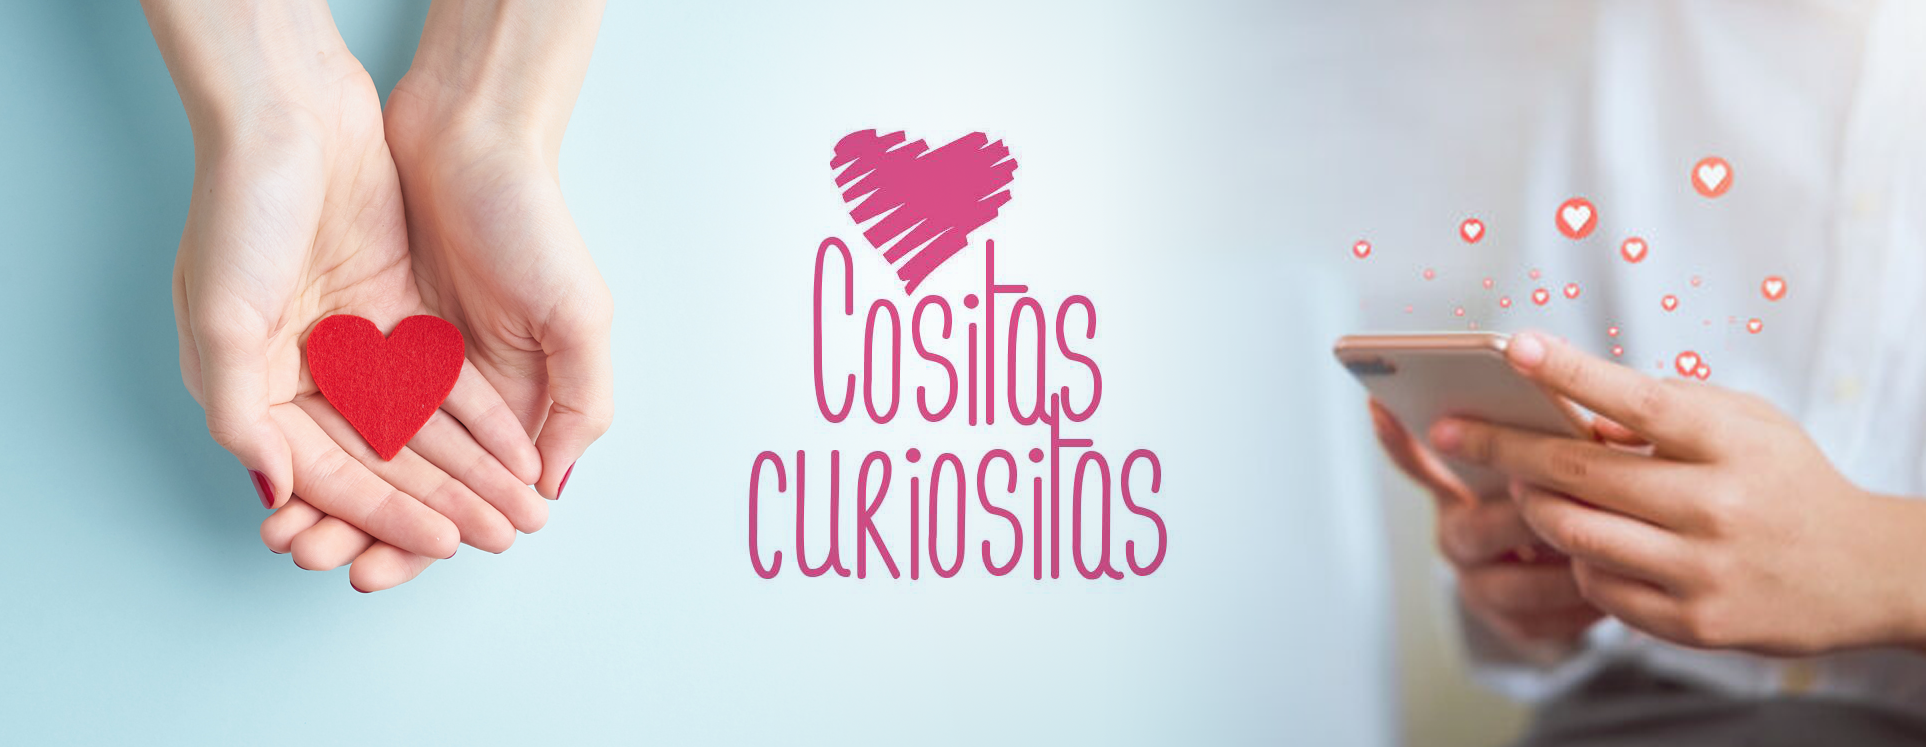 cositas_curiositas